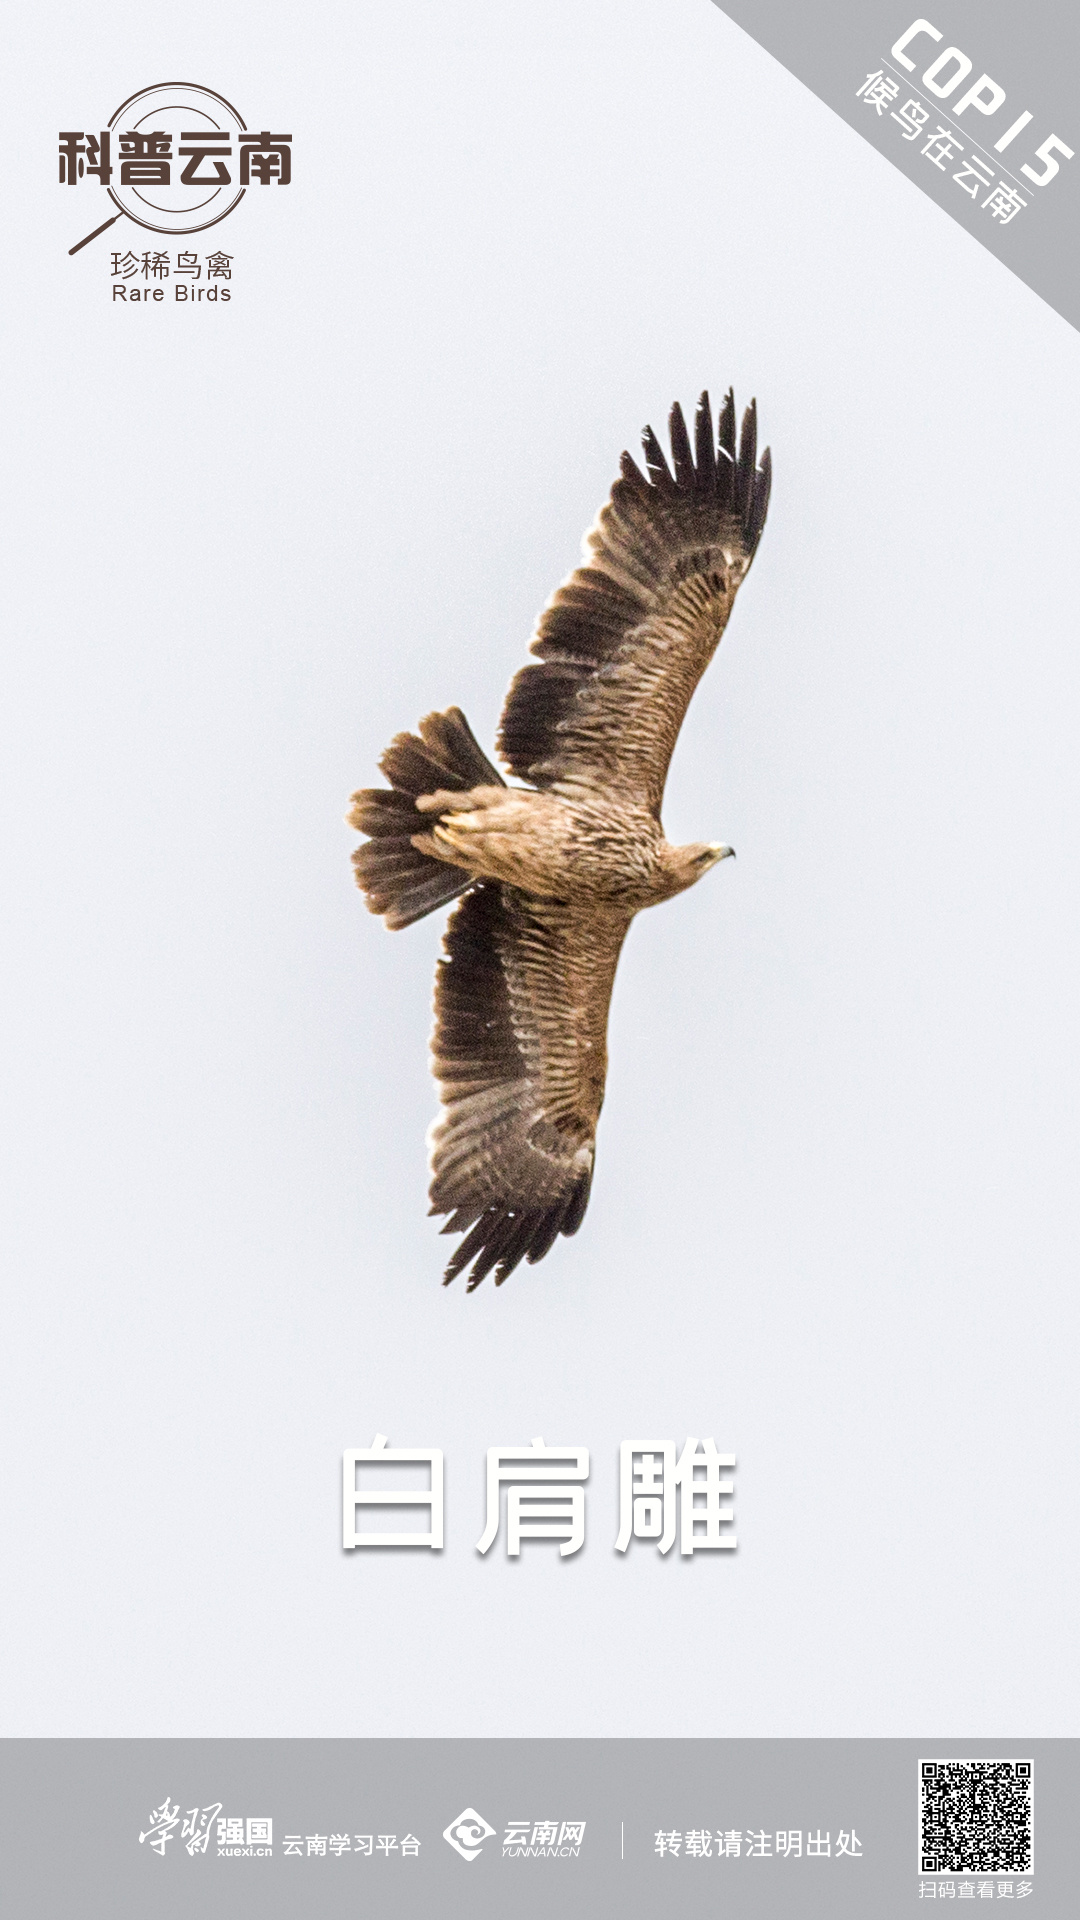 科普云南 | 珍稀鸟禽——白肩雕